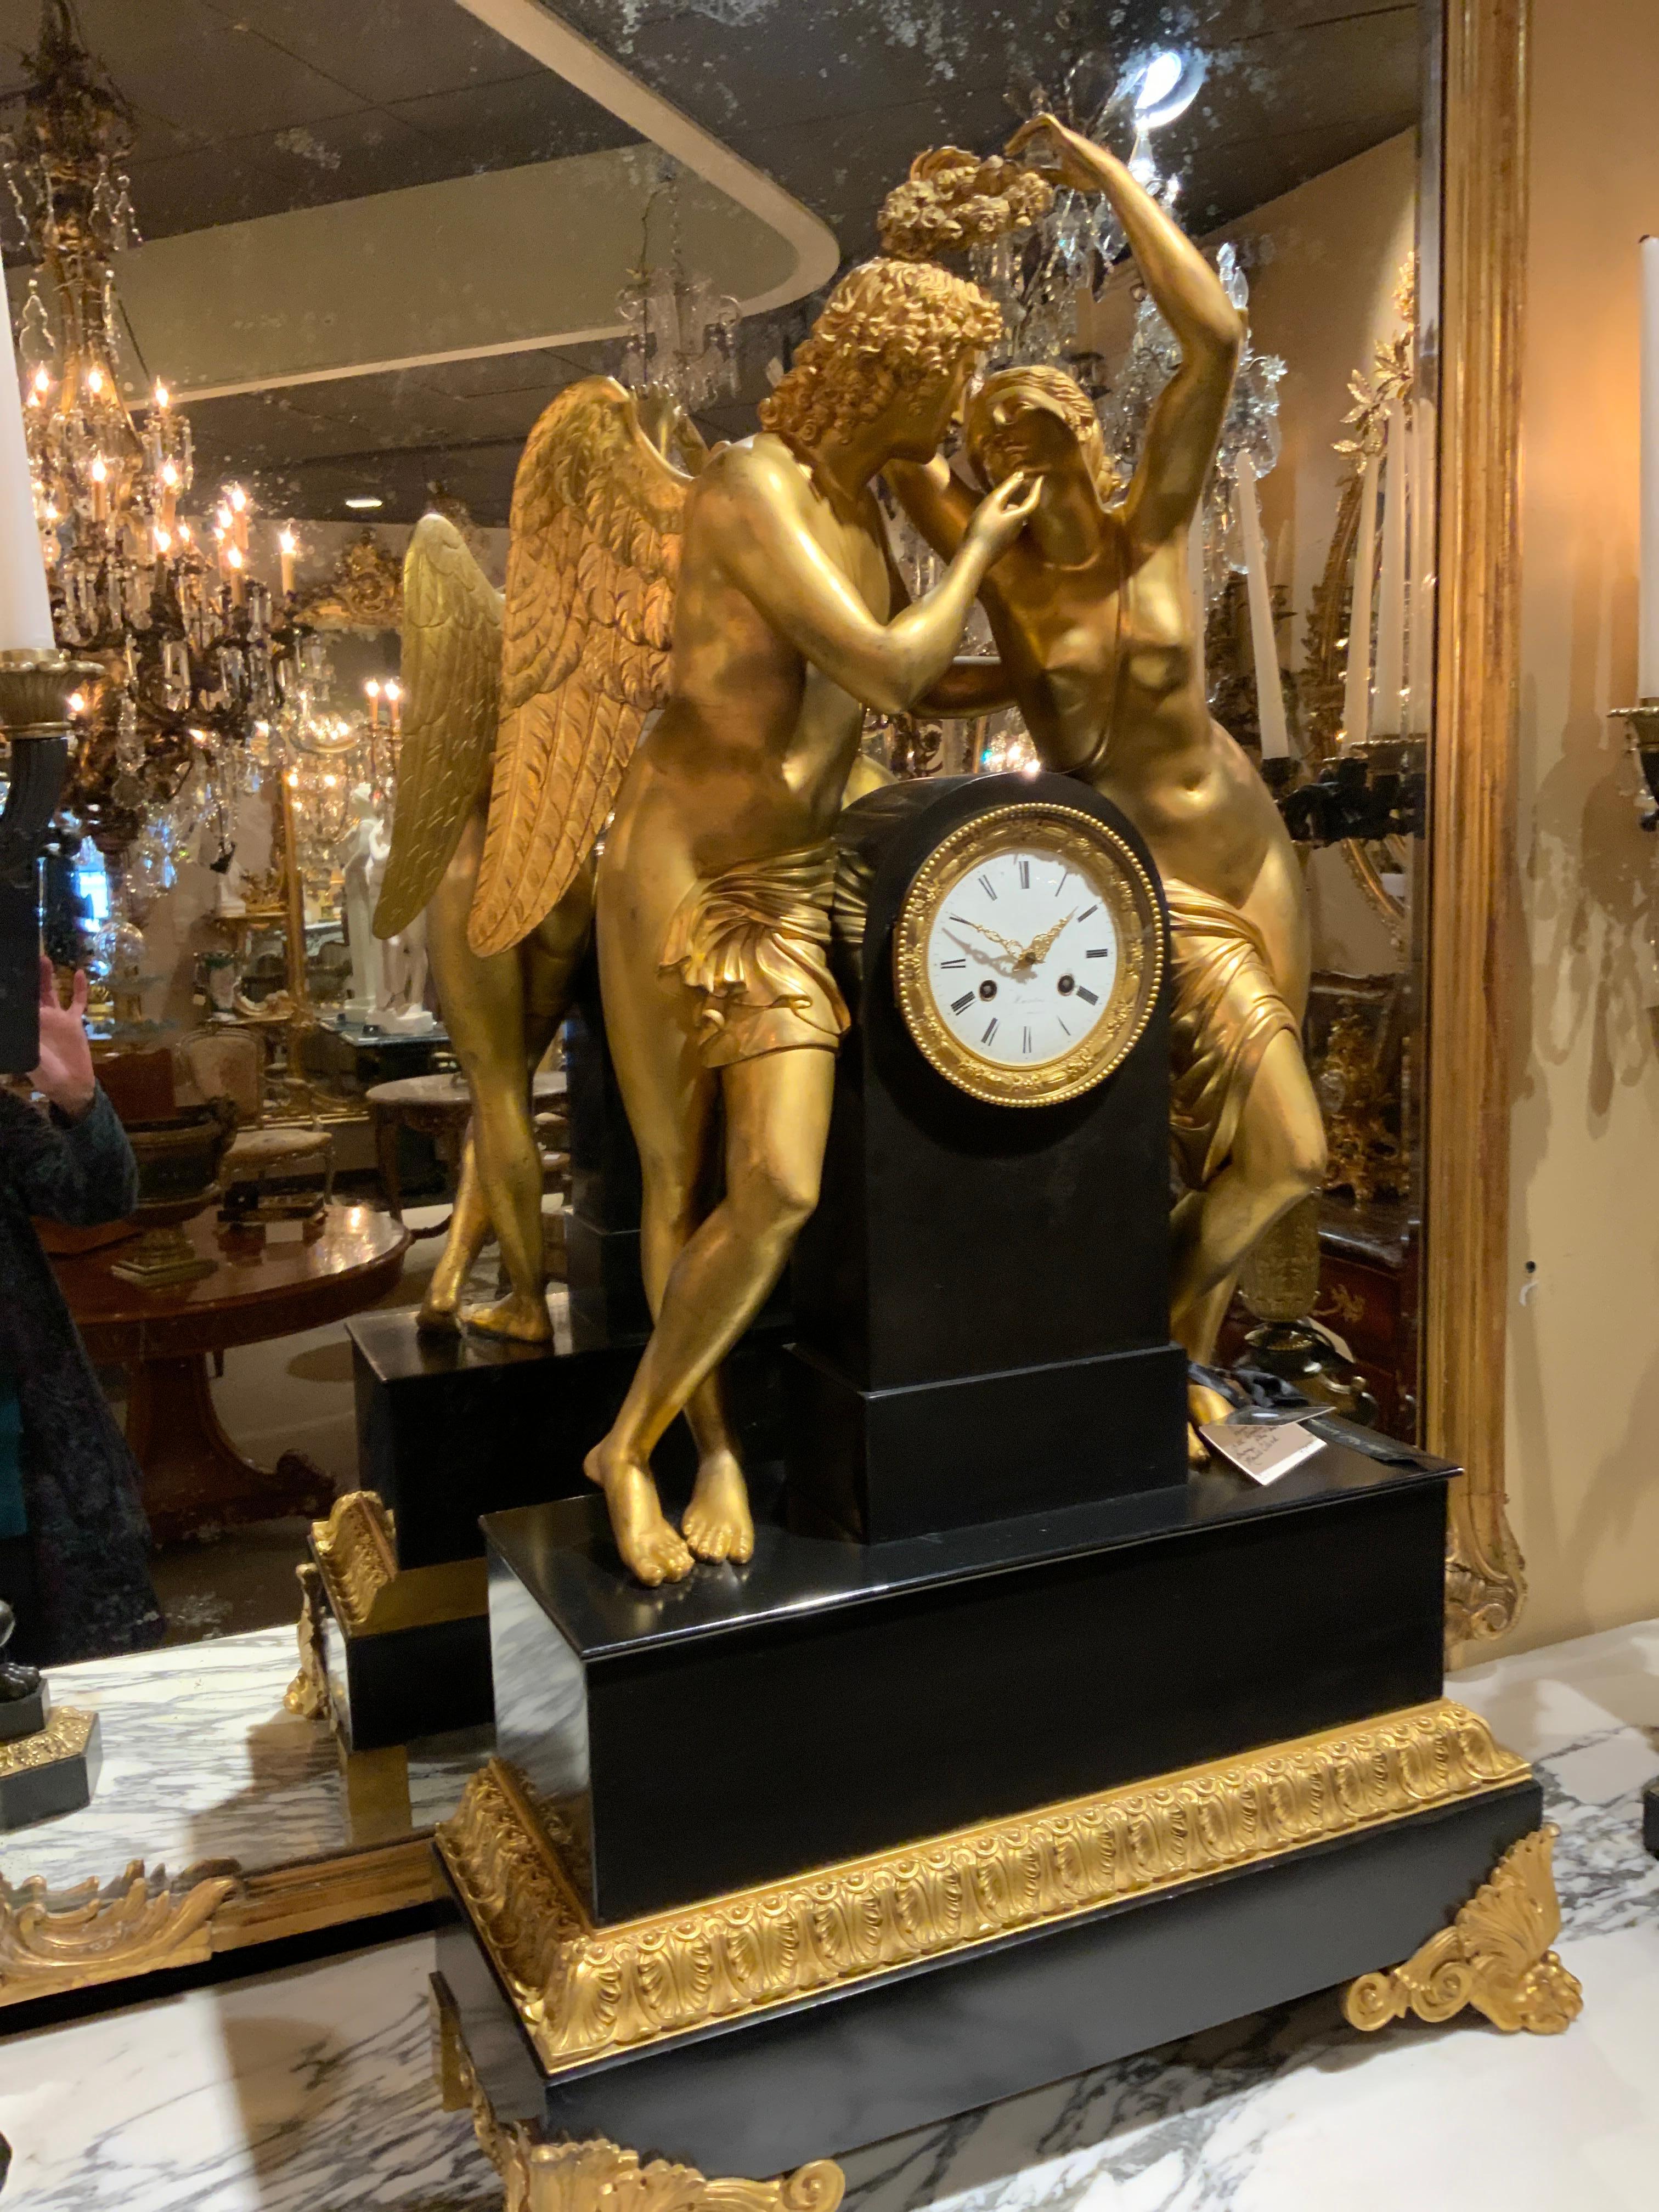 Horloge étonnante représentant l'histoire d'Amor et Psyché qui
Il s'agit du dieu de l'amour dans la mythologie grecque. Grand bronze
Des figures de Dore ornent le fronton sur un socle rectangulaire.
Base en marbre. Elle possède une face émaillée